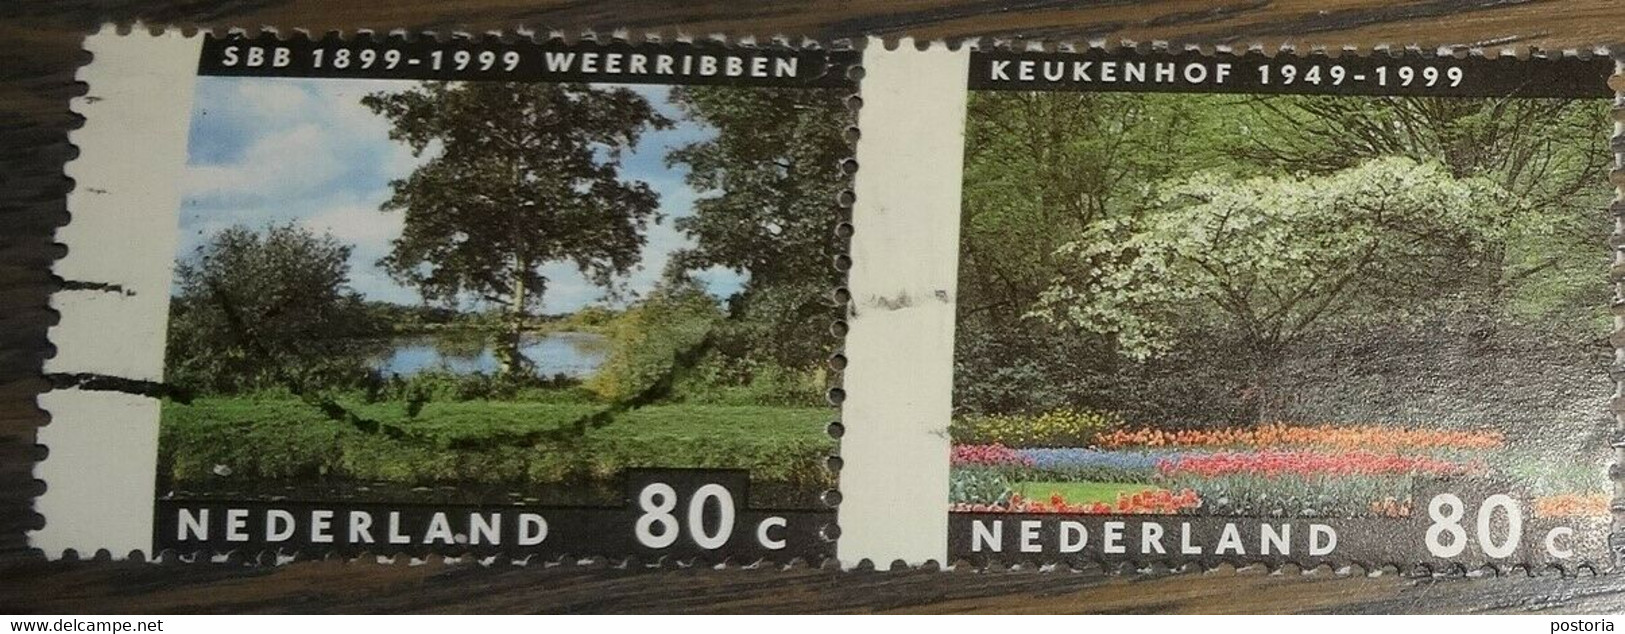 Nederland - NVPH - 1816 T/m 1817 Paar - 1999 - Gebruikt - Cancelled - Jaargetijden Weerribben - Keukenhof - Used Stamps